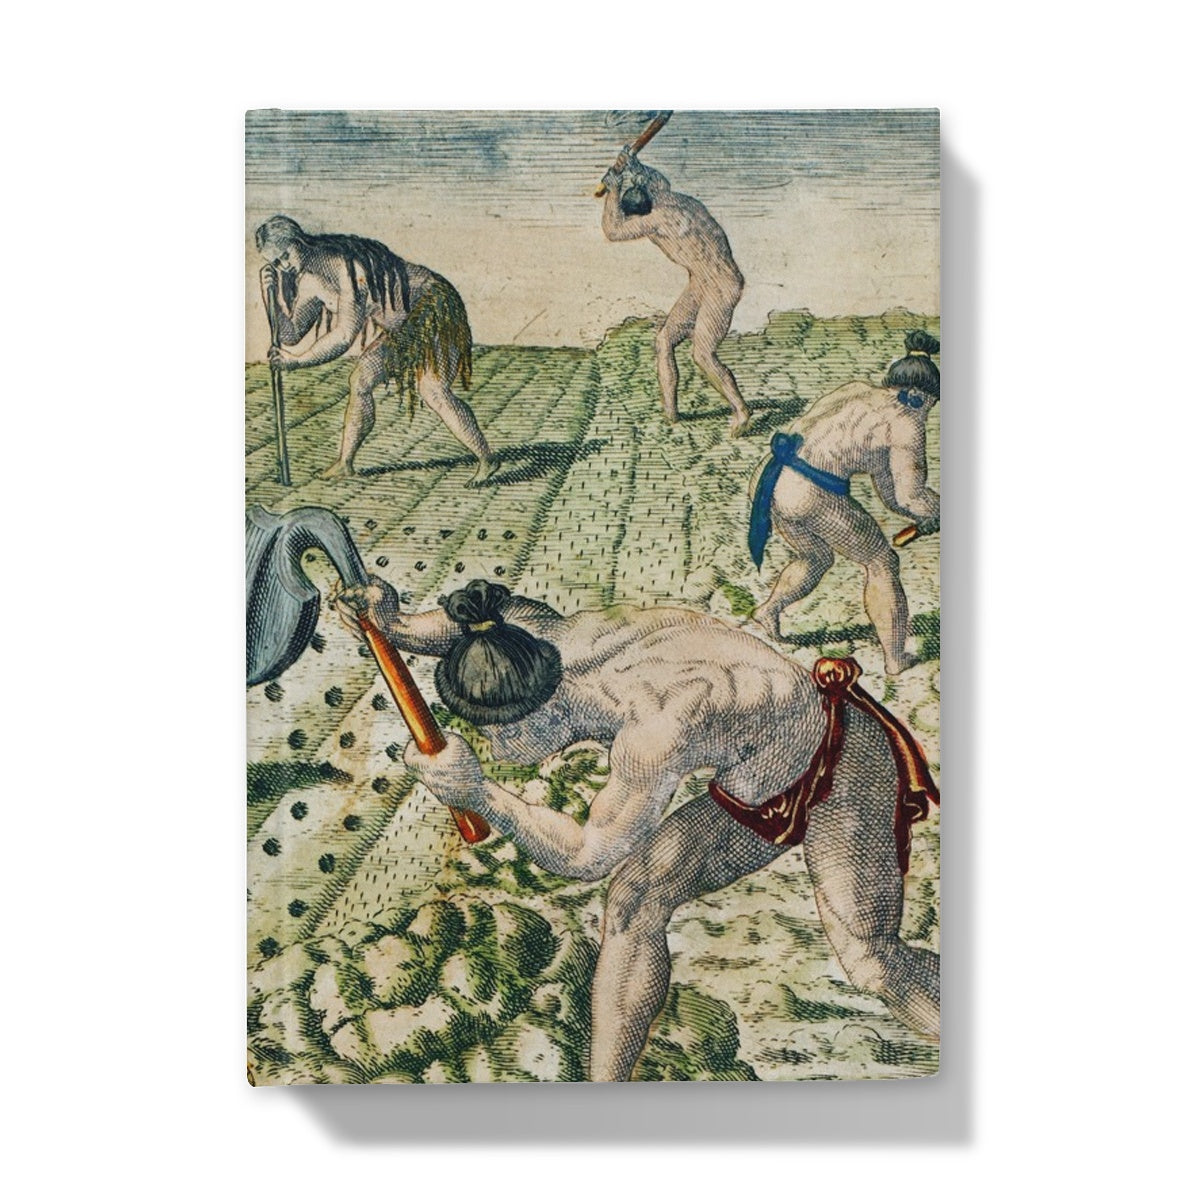 Comment ils labourent le sol par Theodor de Bry (1528-1598) - Carnet cartonné